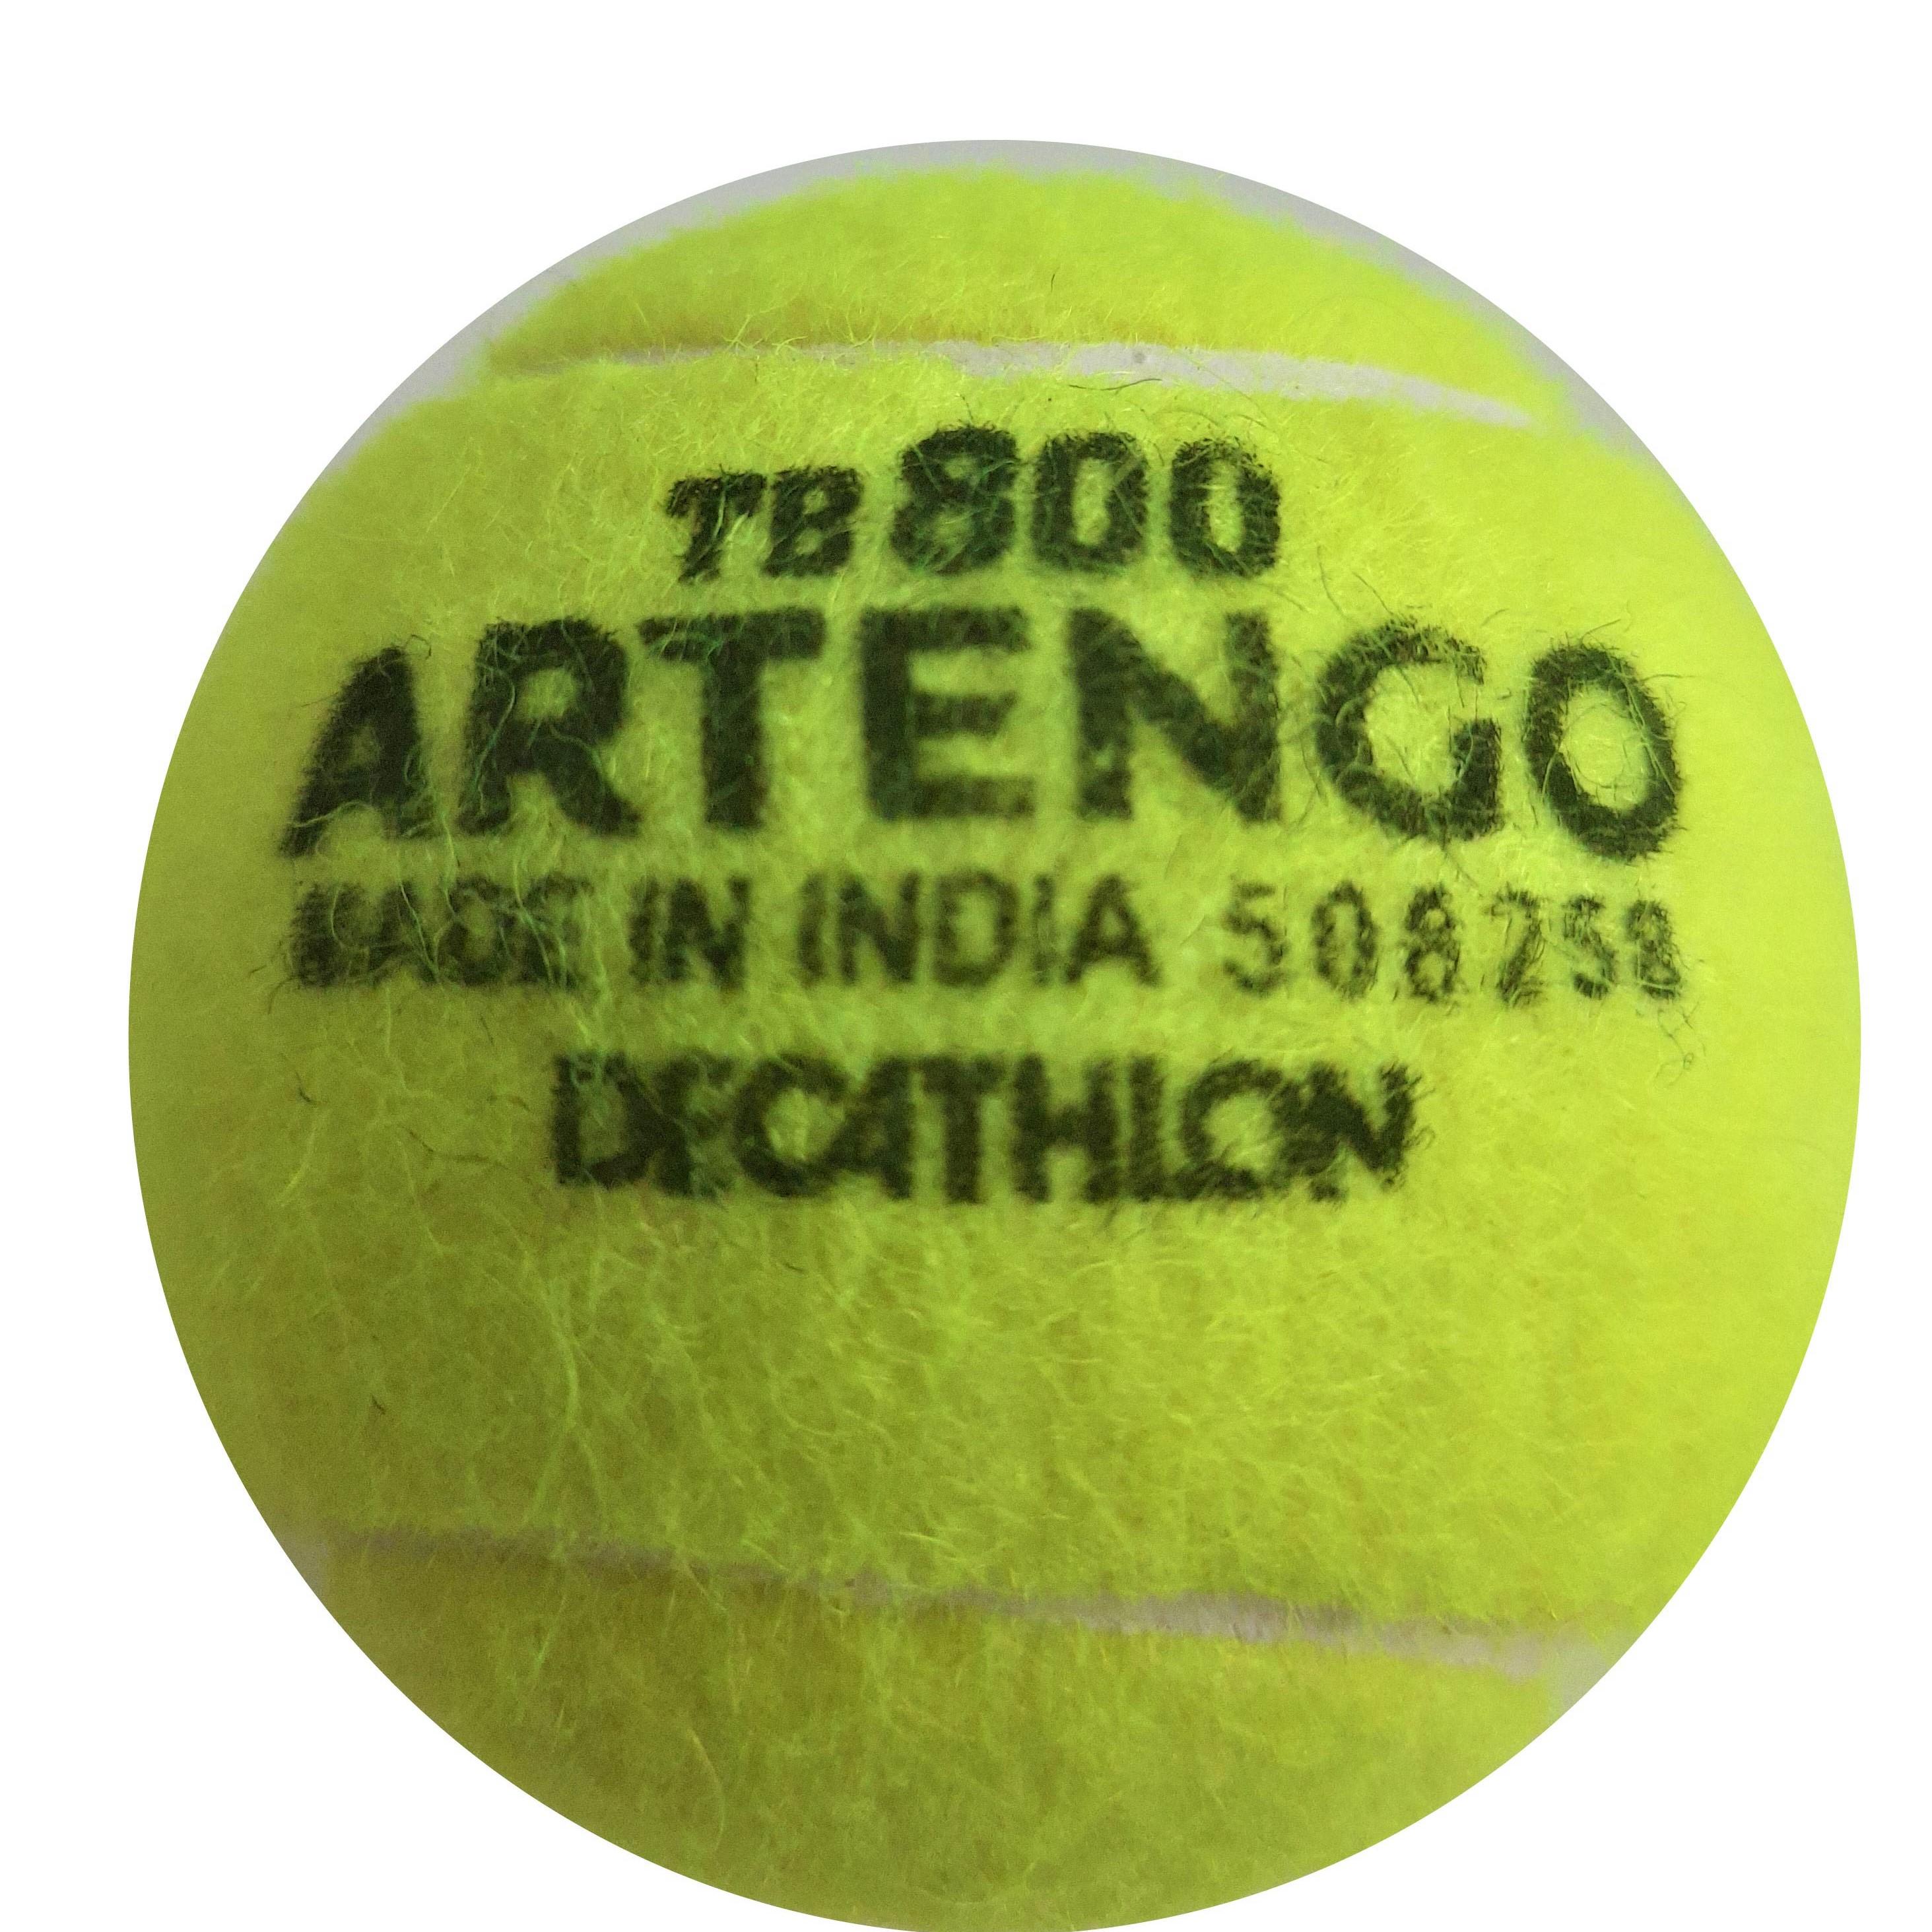 Buy Tennis Balls Online In India 